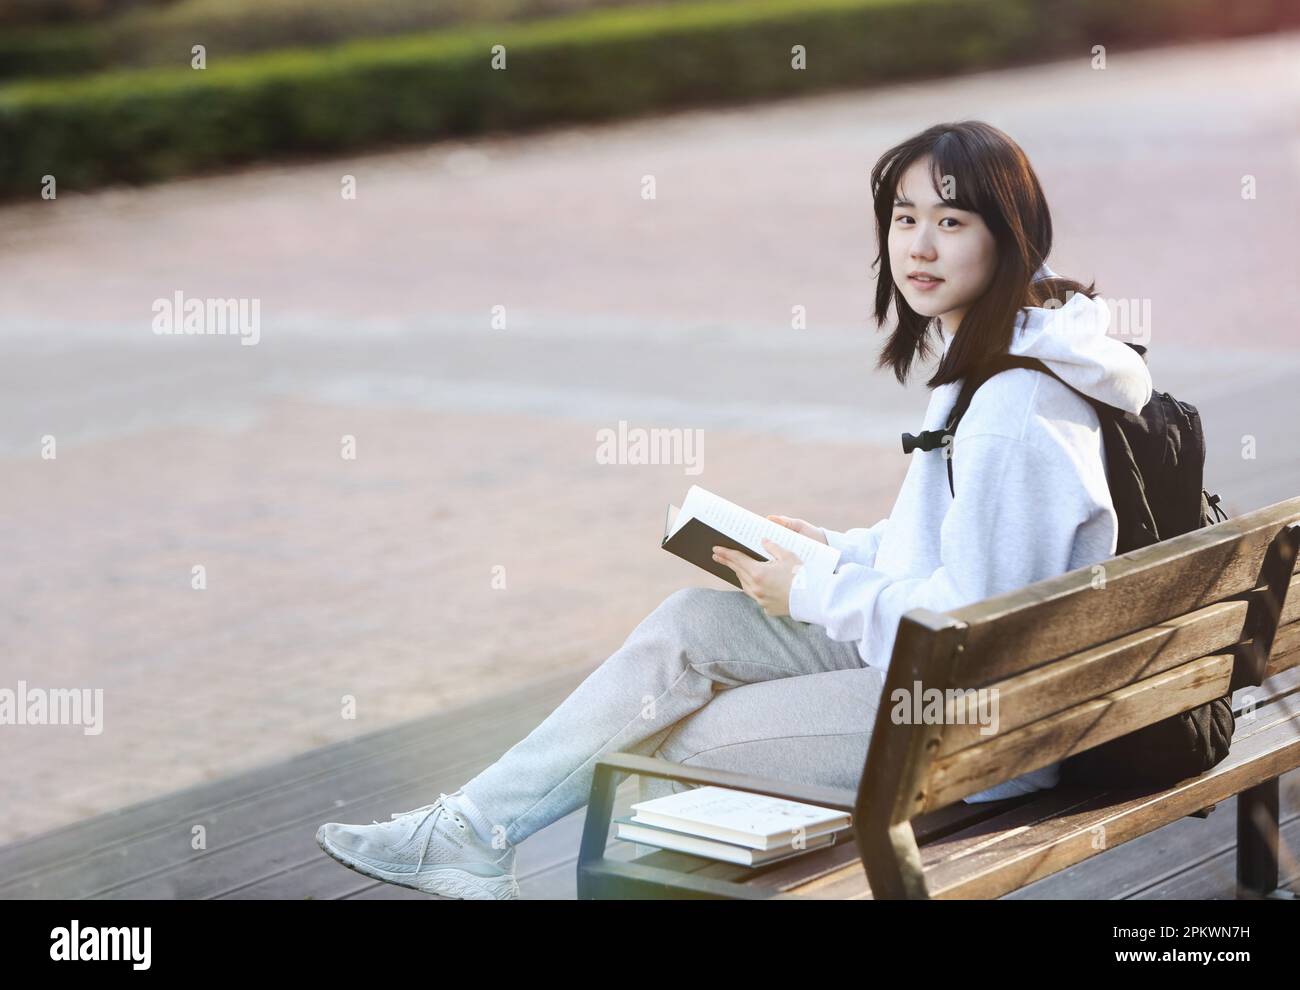 Konzept für Schüler und Studenten mit Rucksack, der auf einer Parkbank sitzt und liest und studiert Stockfoto